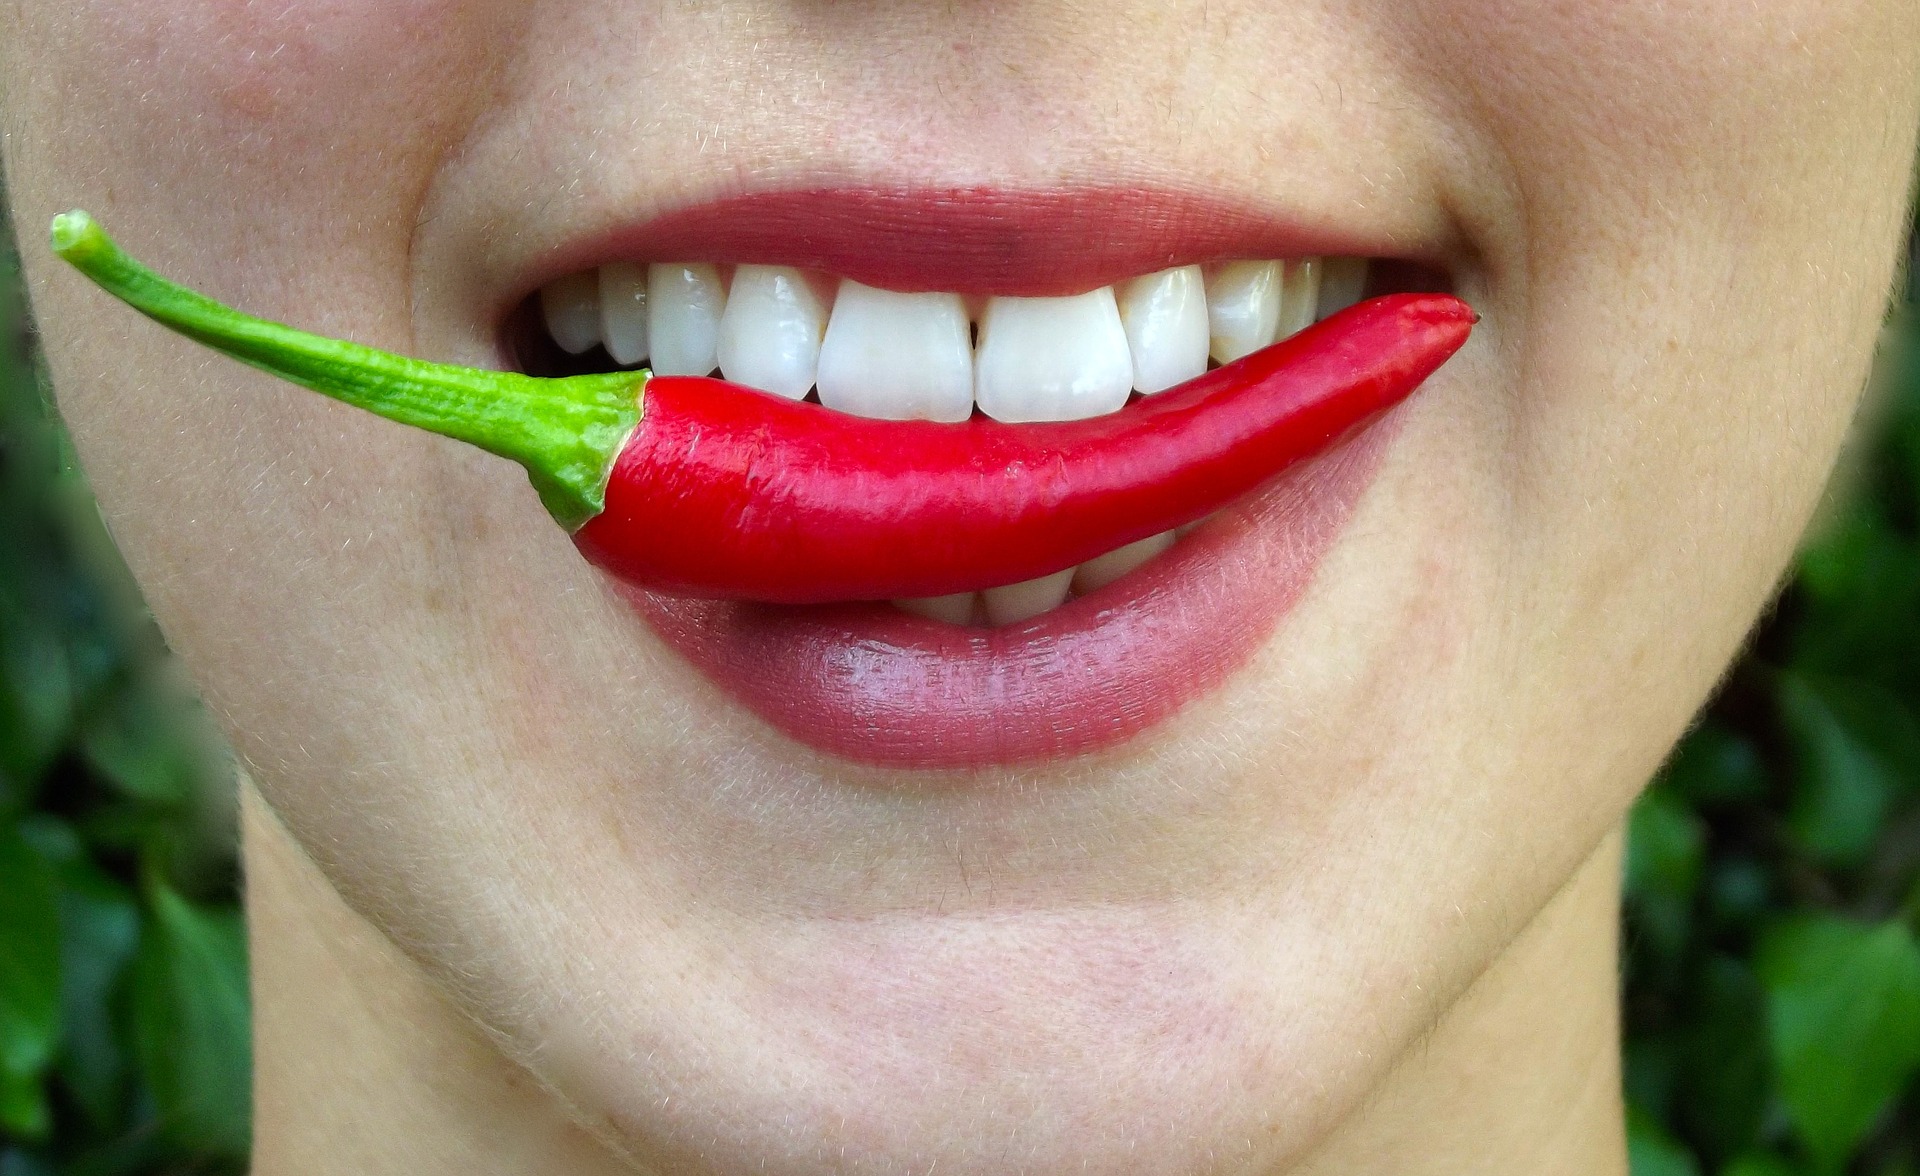 Za účinný spalovač tuků a nakopávač metabolismu je považován i kapsaicin – výtažek z chilli papriček